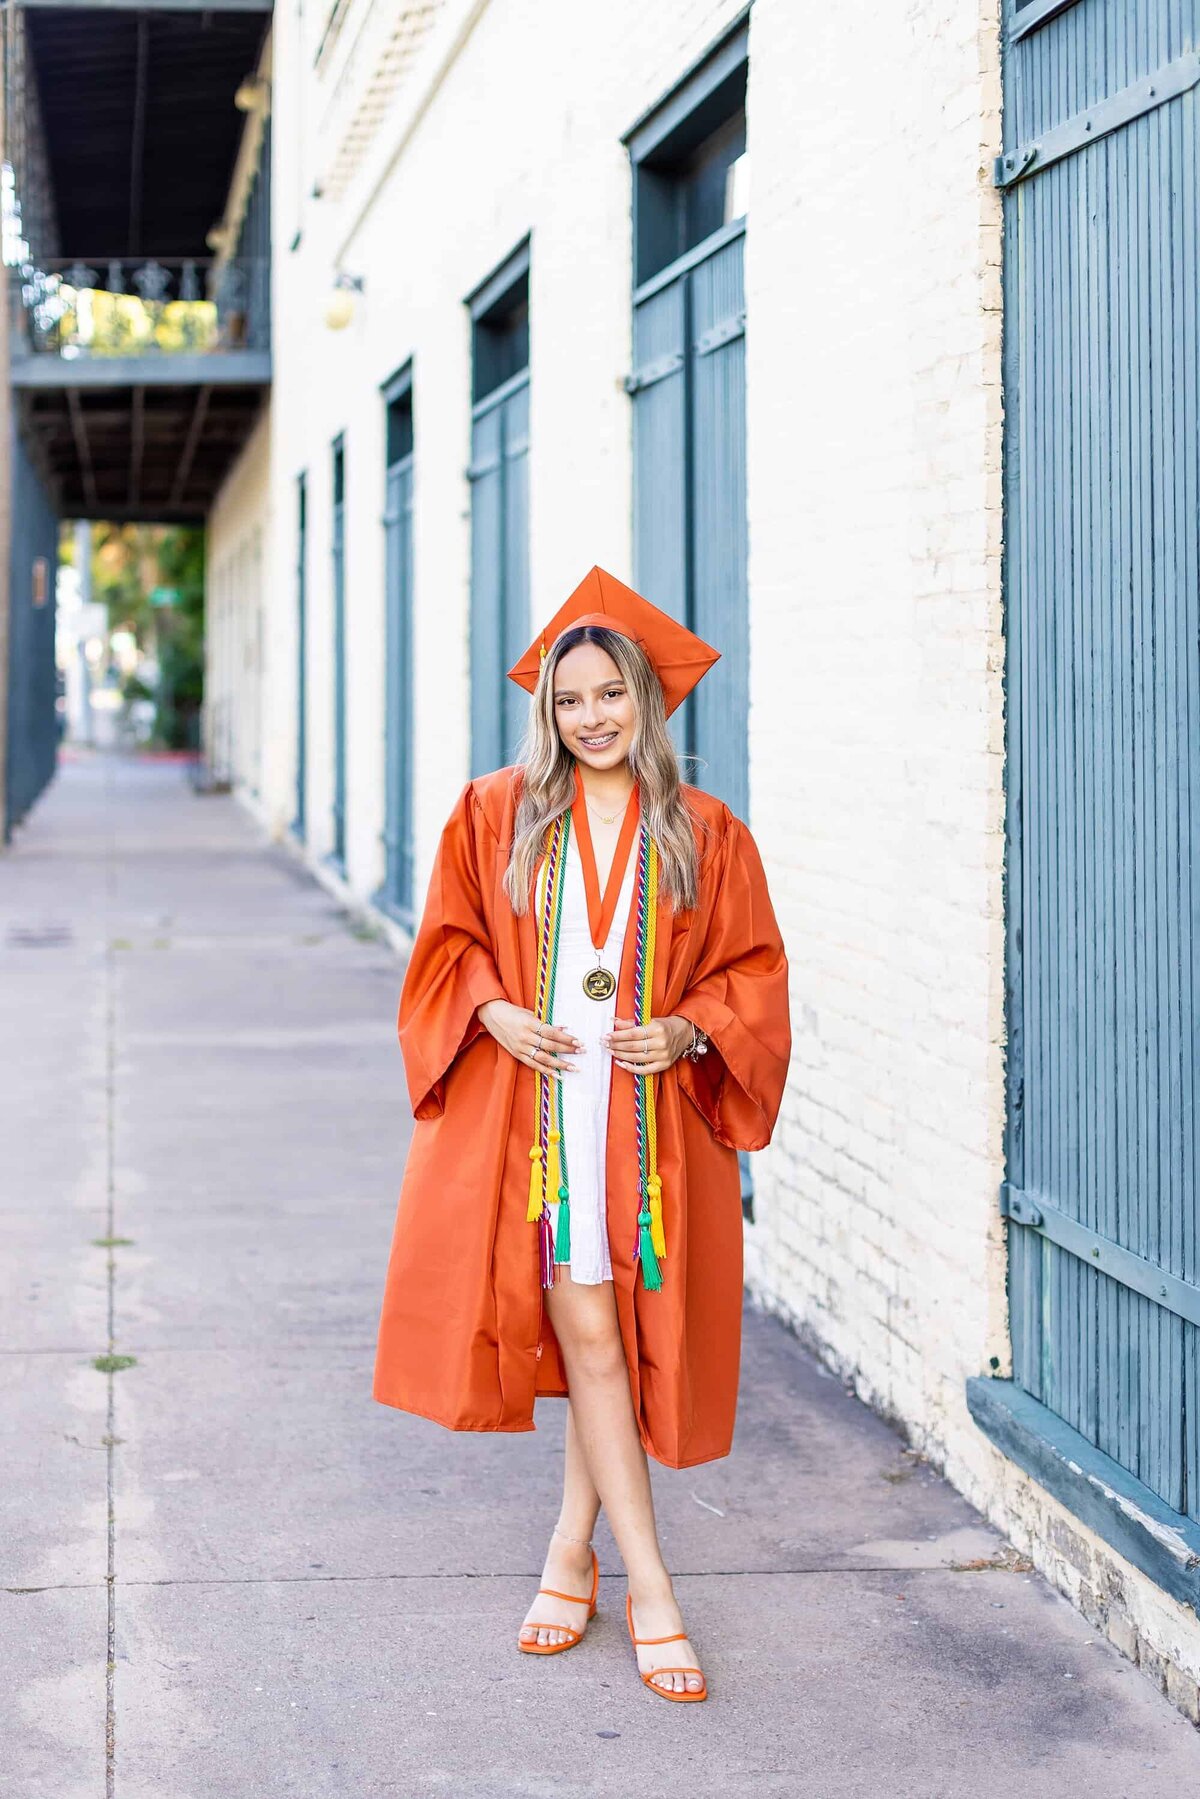 Senior orange cap and gown